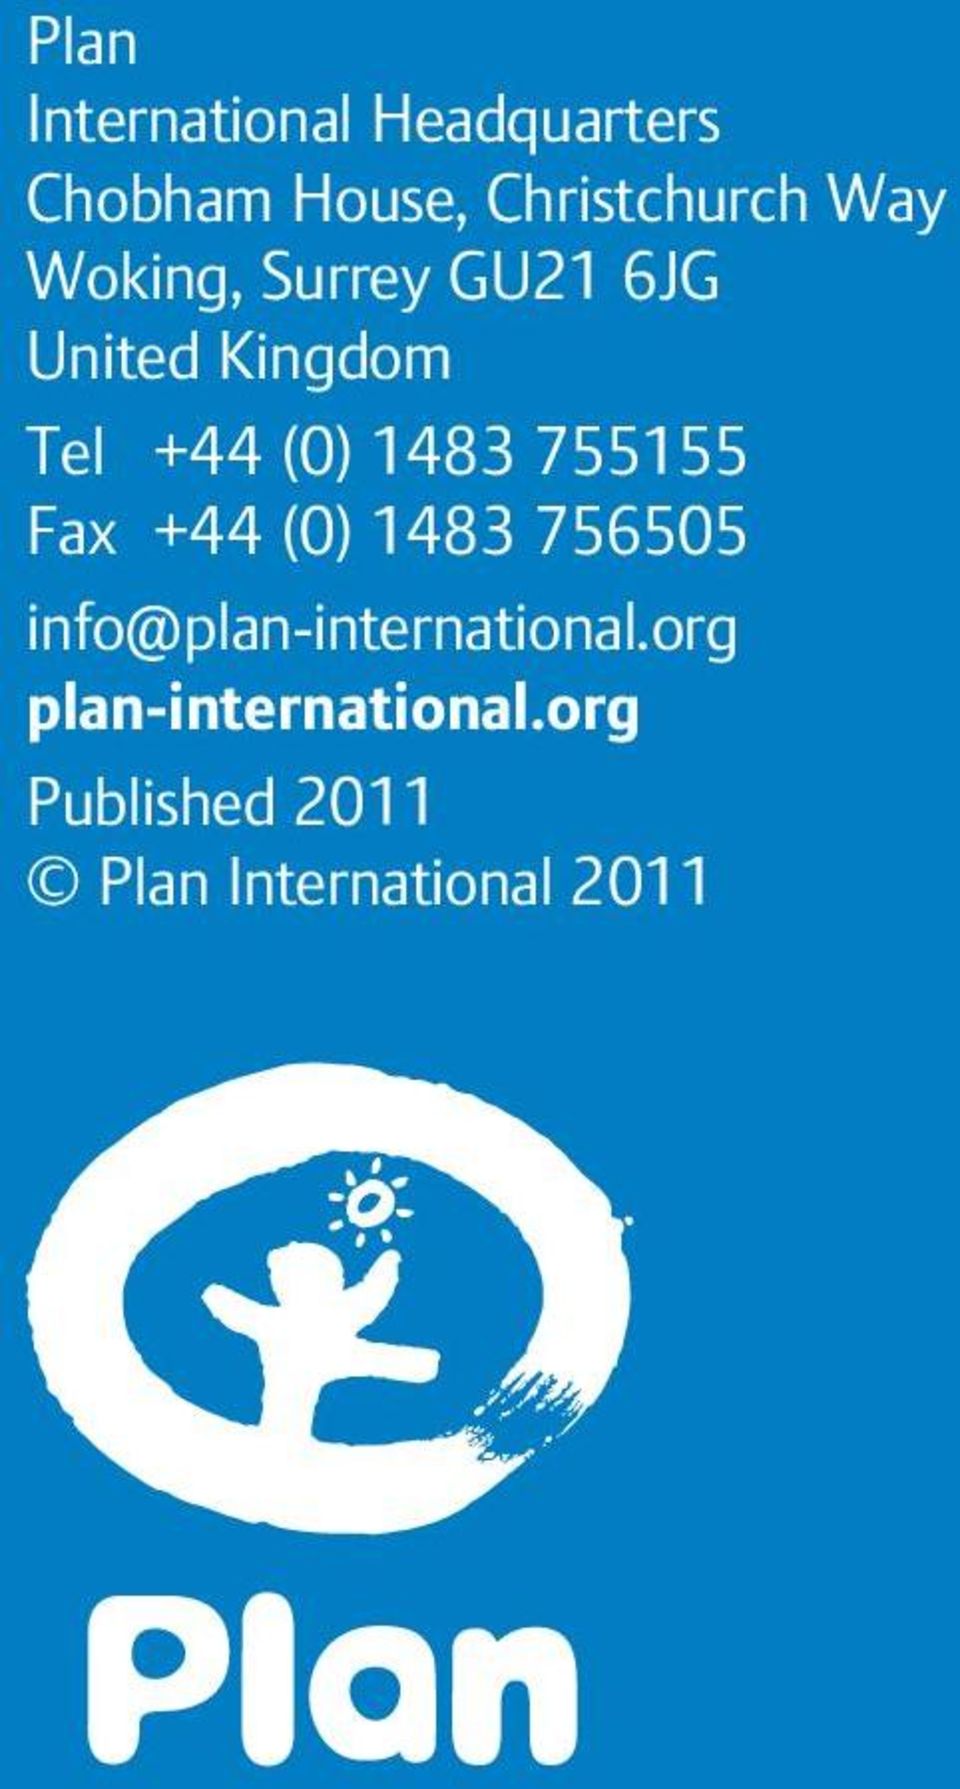 755155 Fax +44 (0) 1483 756505 info@plan-international.